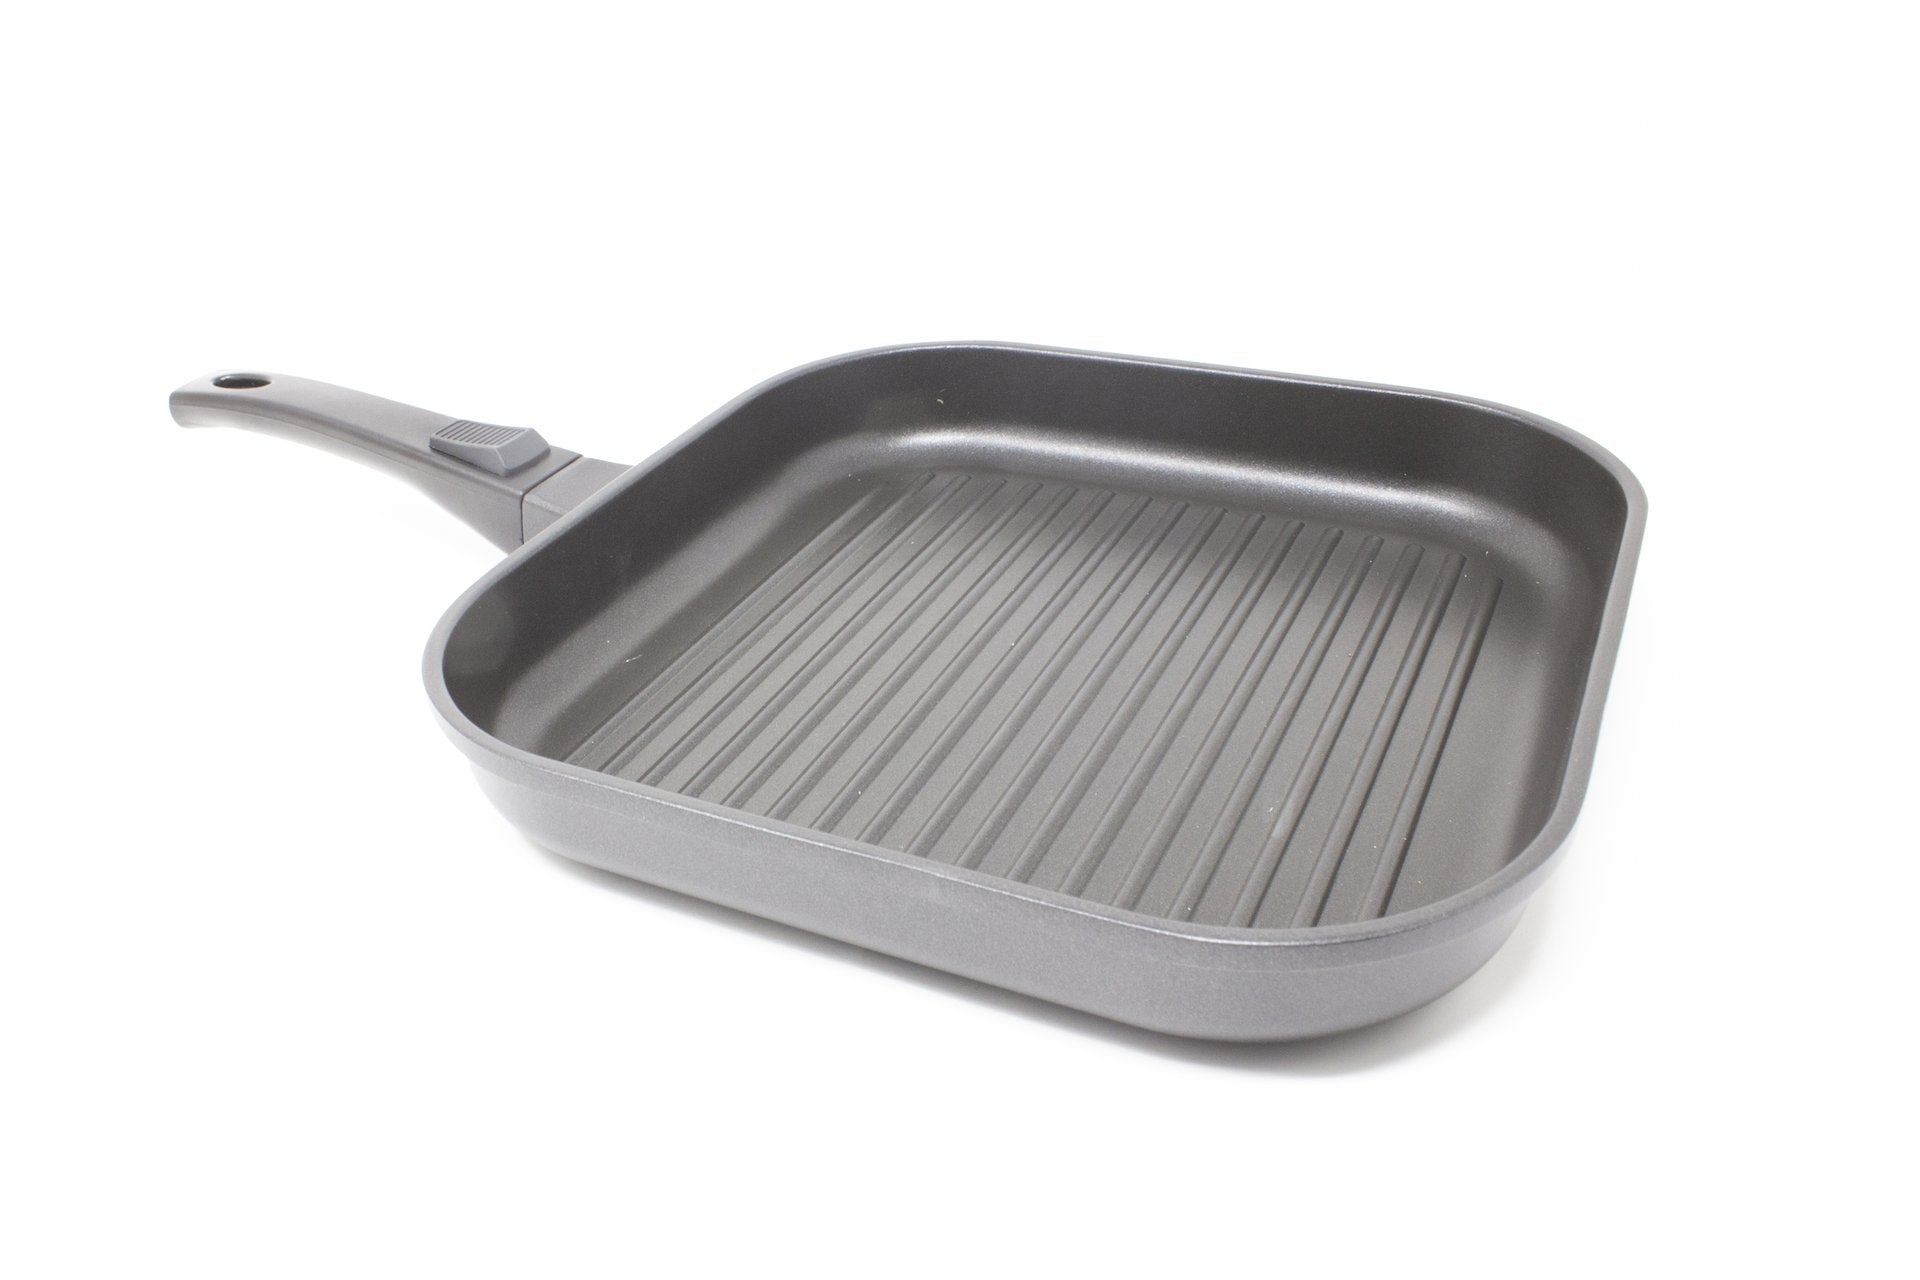 Jean Patrique. The Whatever Pan. Cast Aluminium non stick griddle pan.  Outdoor gear review. 